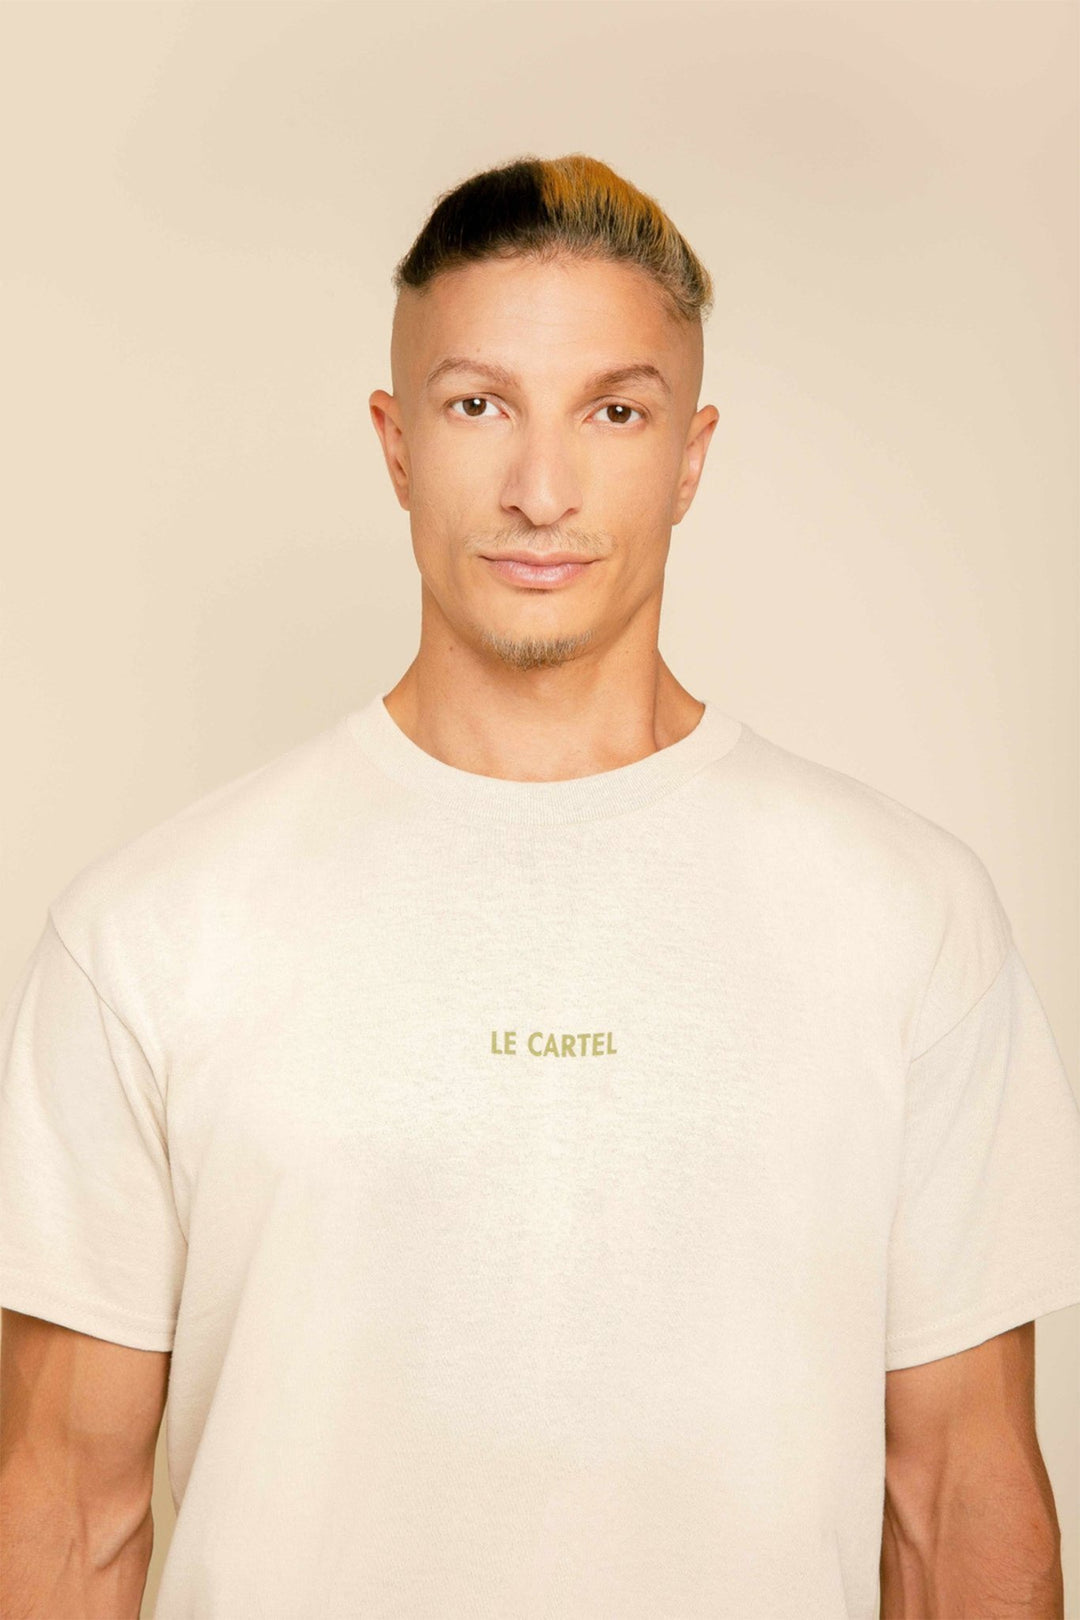 COLLÉ-SERRÉ・T-shirt unisexe・Sable - Le Cartel